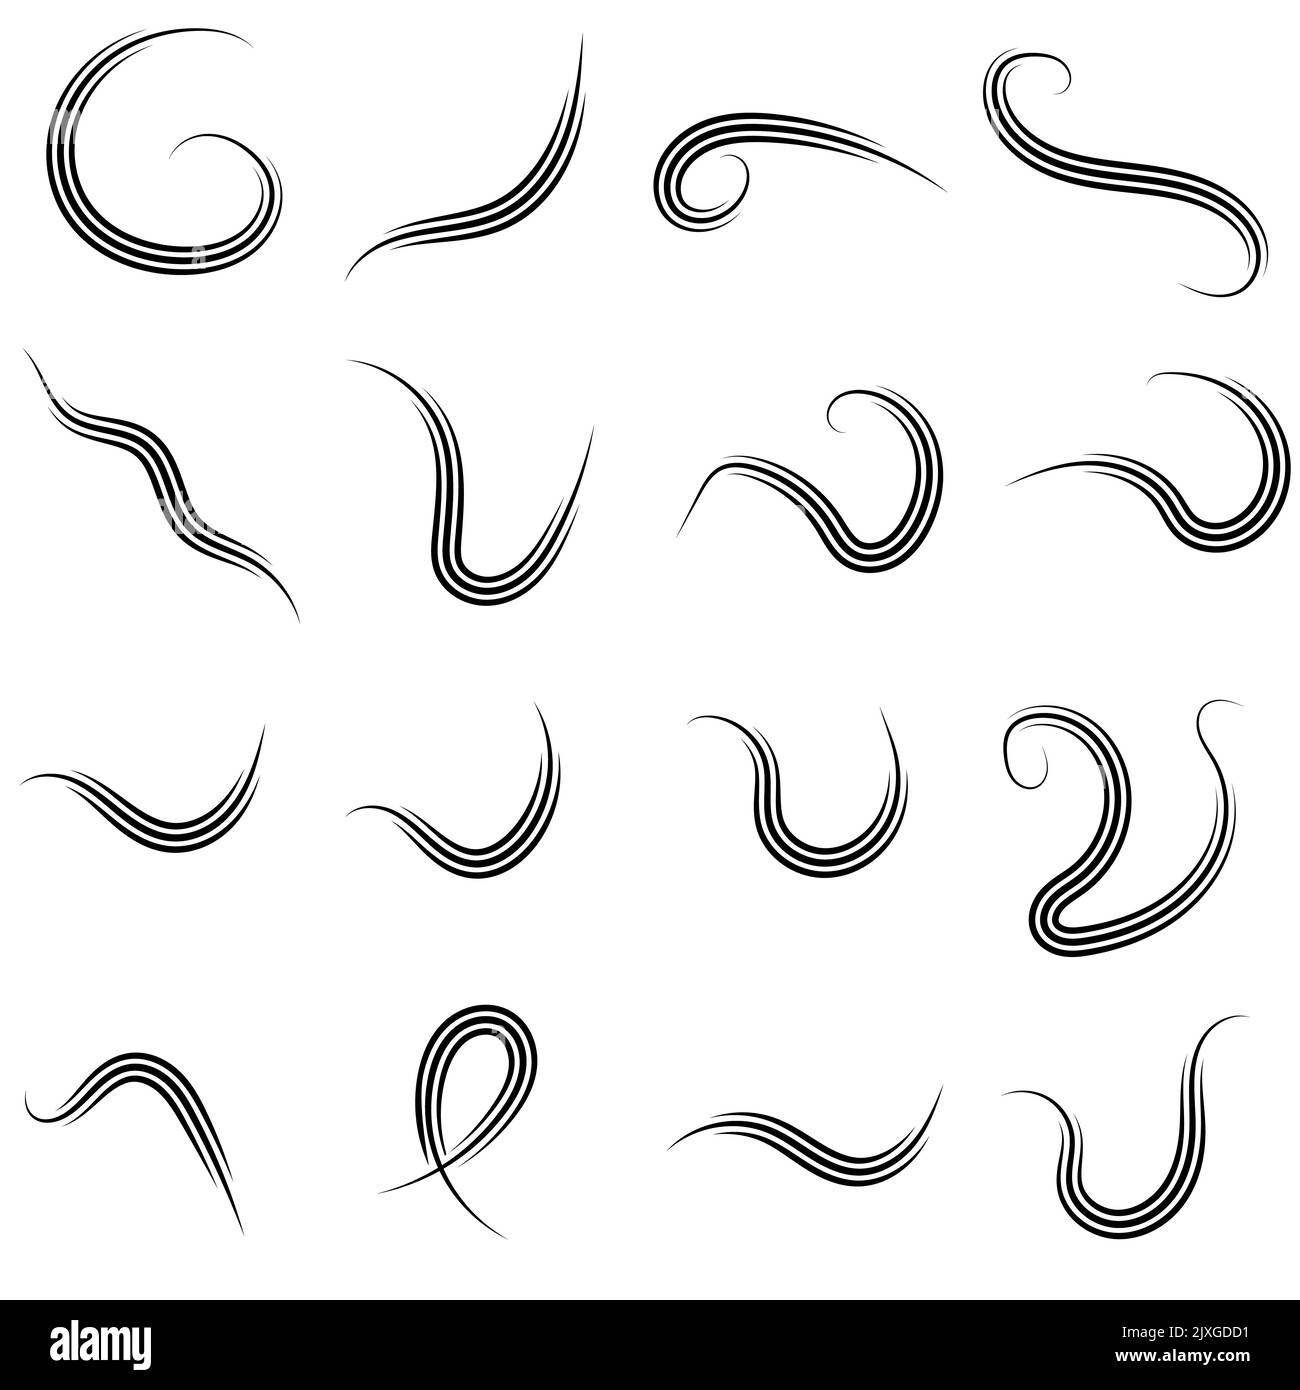 Plantilla de logotipo con líneas curvas caligráficas elegantes de rayas onduladas suaves Ilustración del Vector